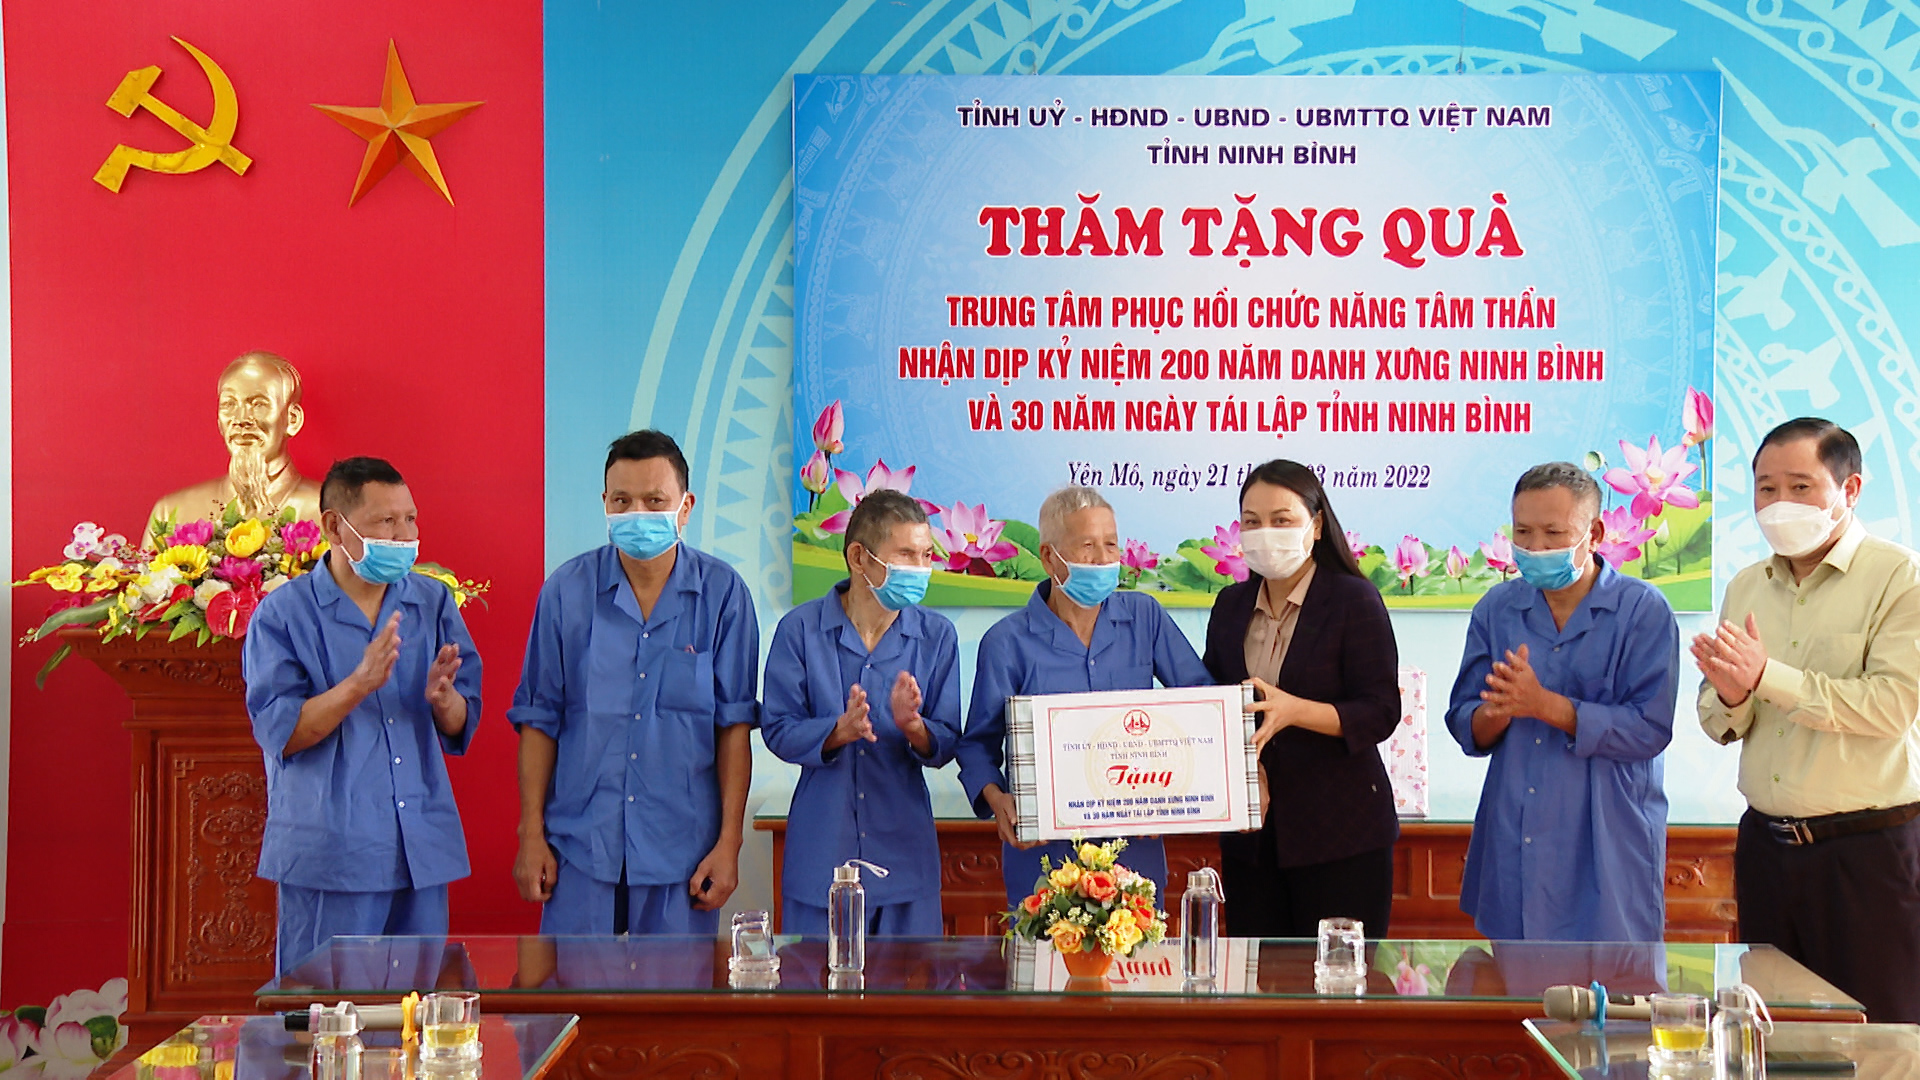 Các đồng chí lãnh đạo tỉnh thăm, tặng quà nhân Kỷ niệm 200 năm danh xưng Ninh Bình, 30 năm tái lập tỉnh